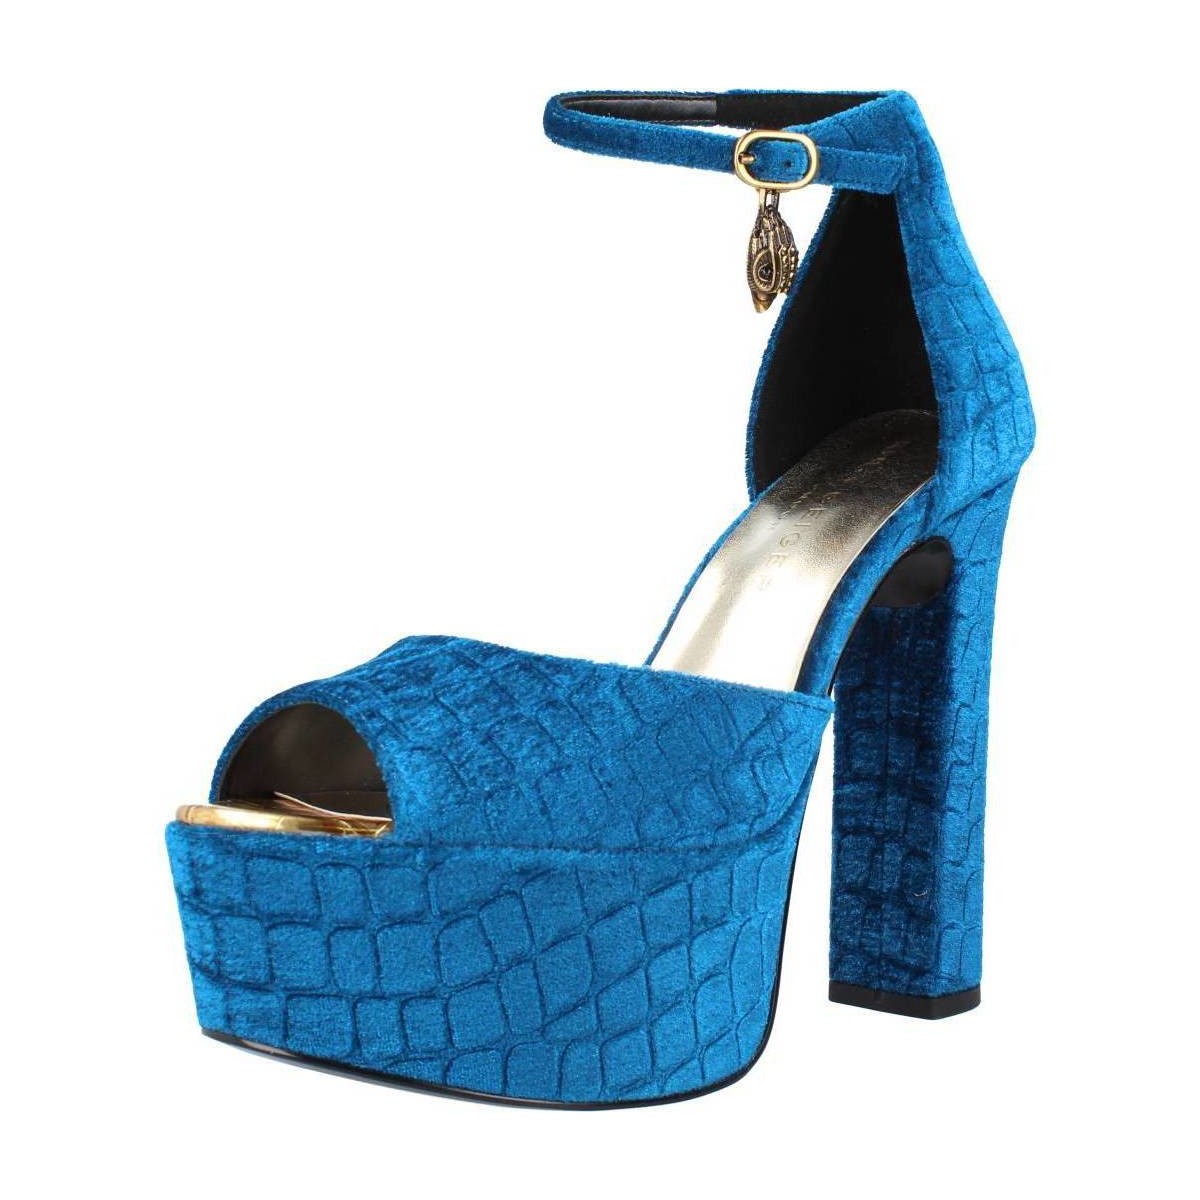 Chaussures Femme Livraison gratuite* et Retour offert Kurt Geiger London SHOREDITCH HIGH PLATFOR Bleu